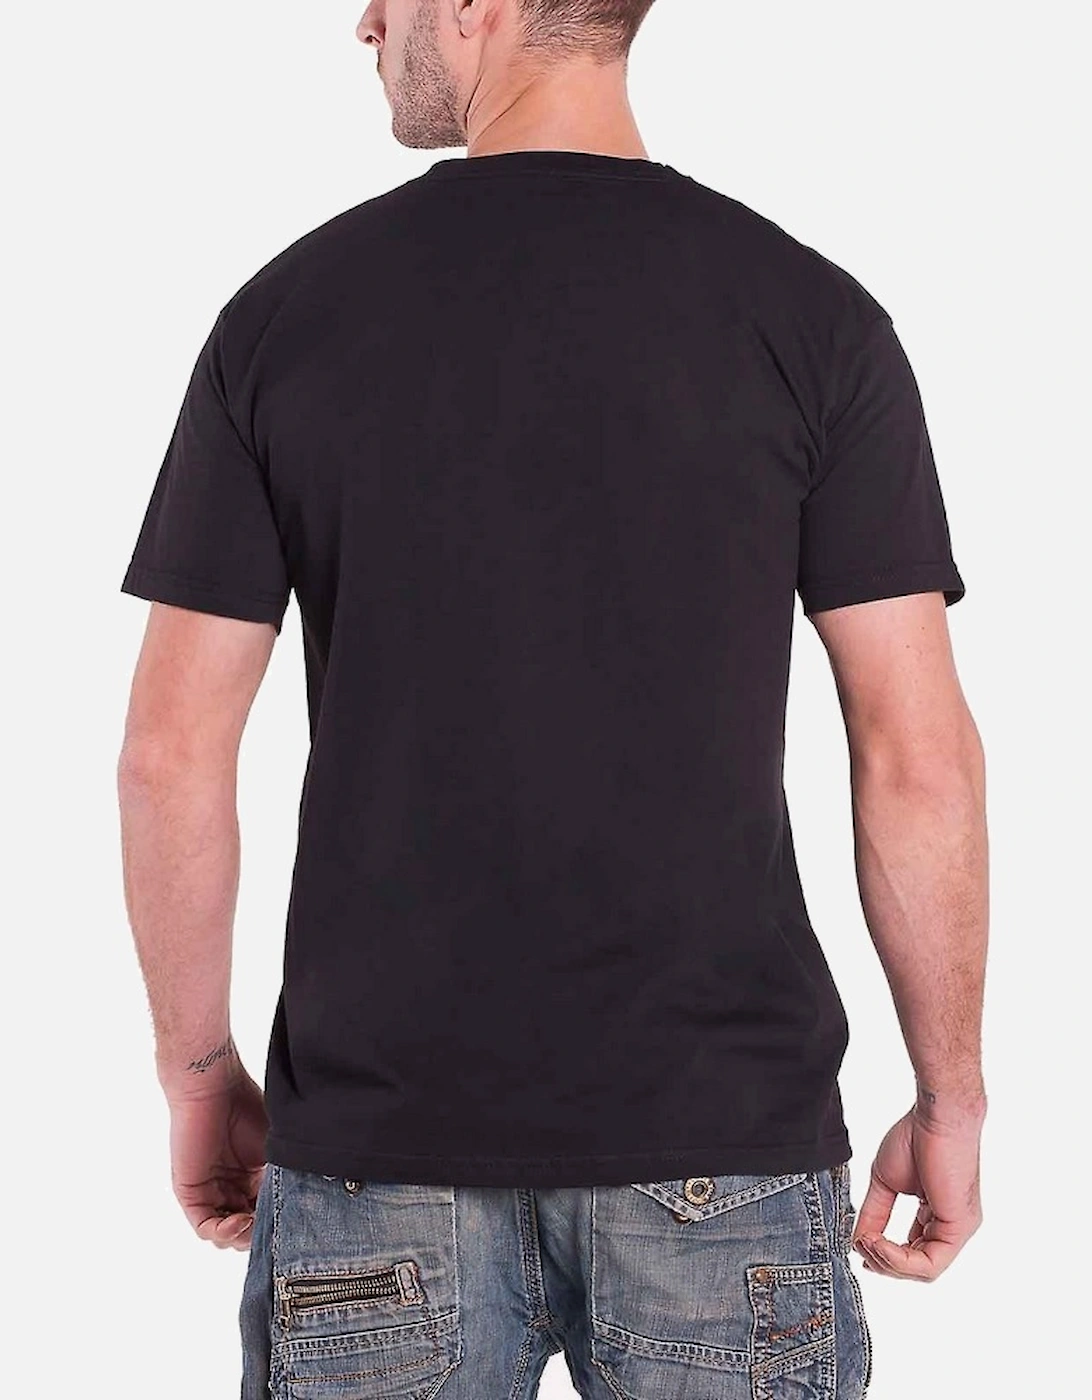 Unisex Adult Chandelier Cotton T-Shirt